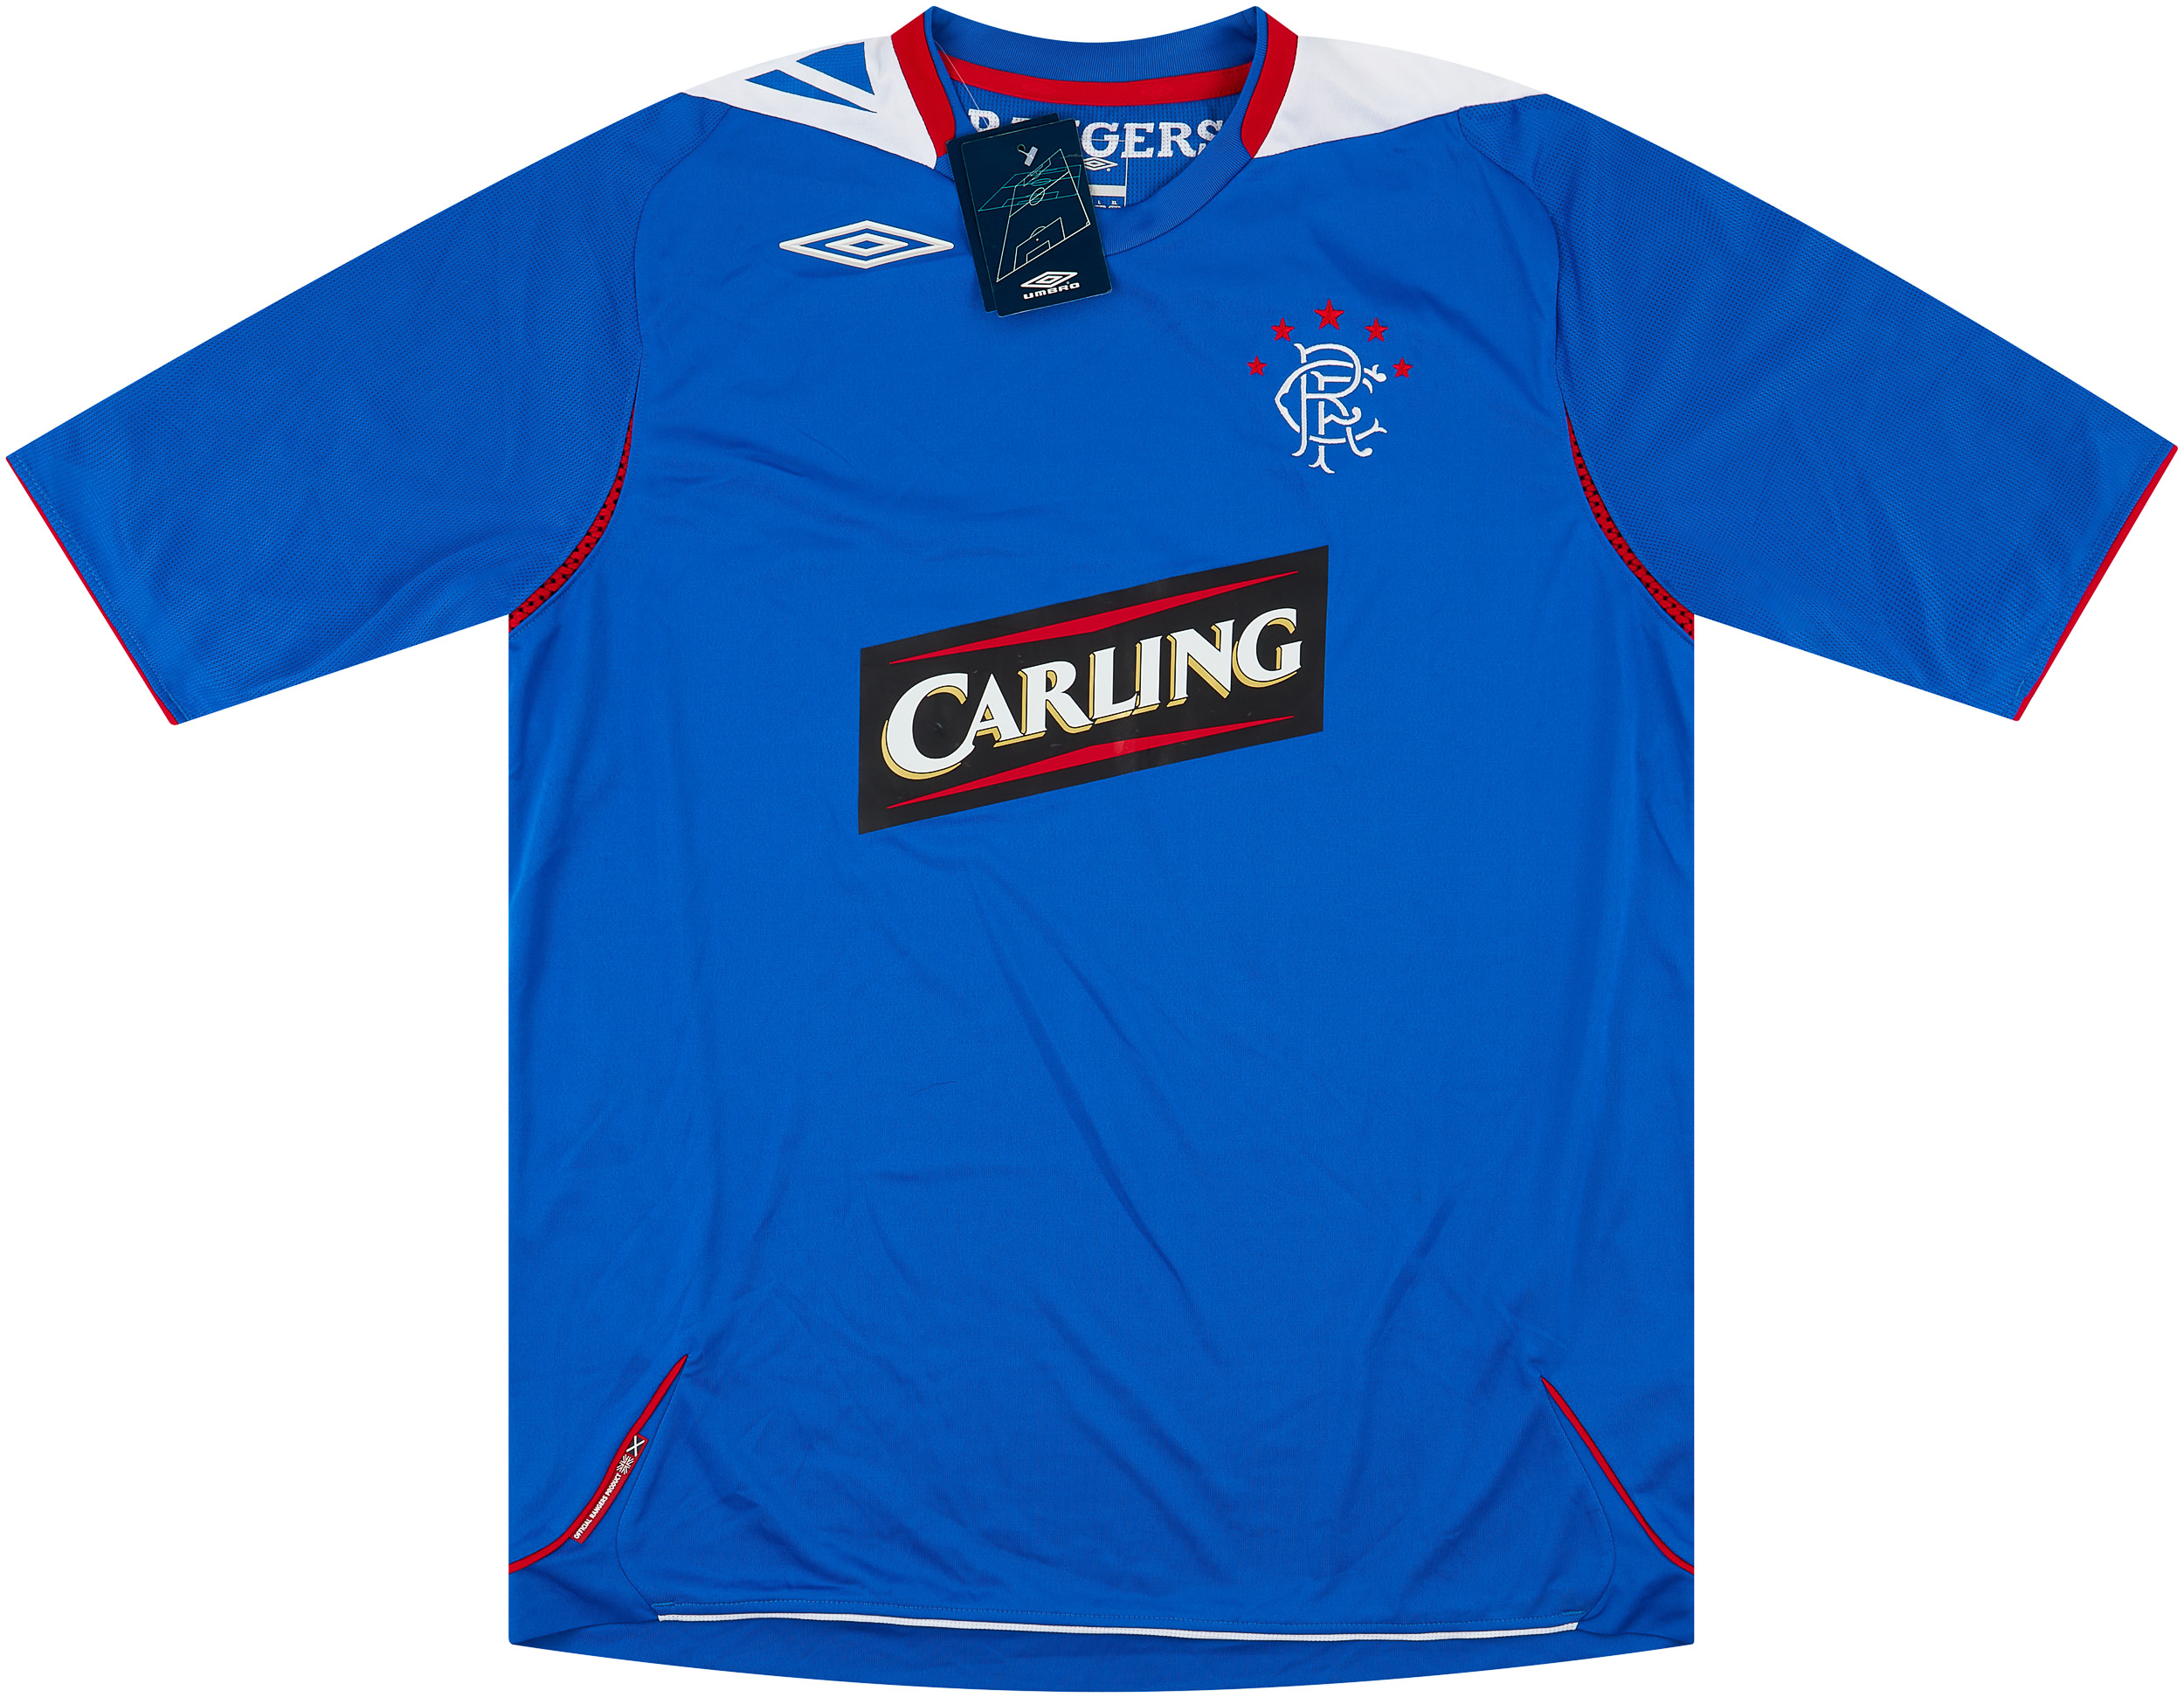 2006-07 Rangers Home Shirt ()